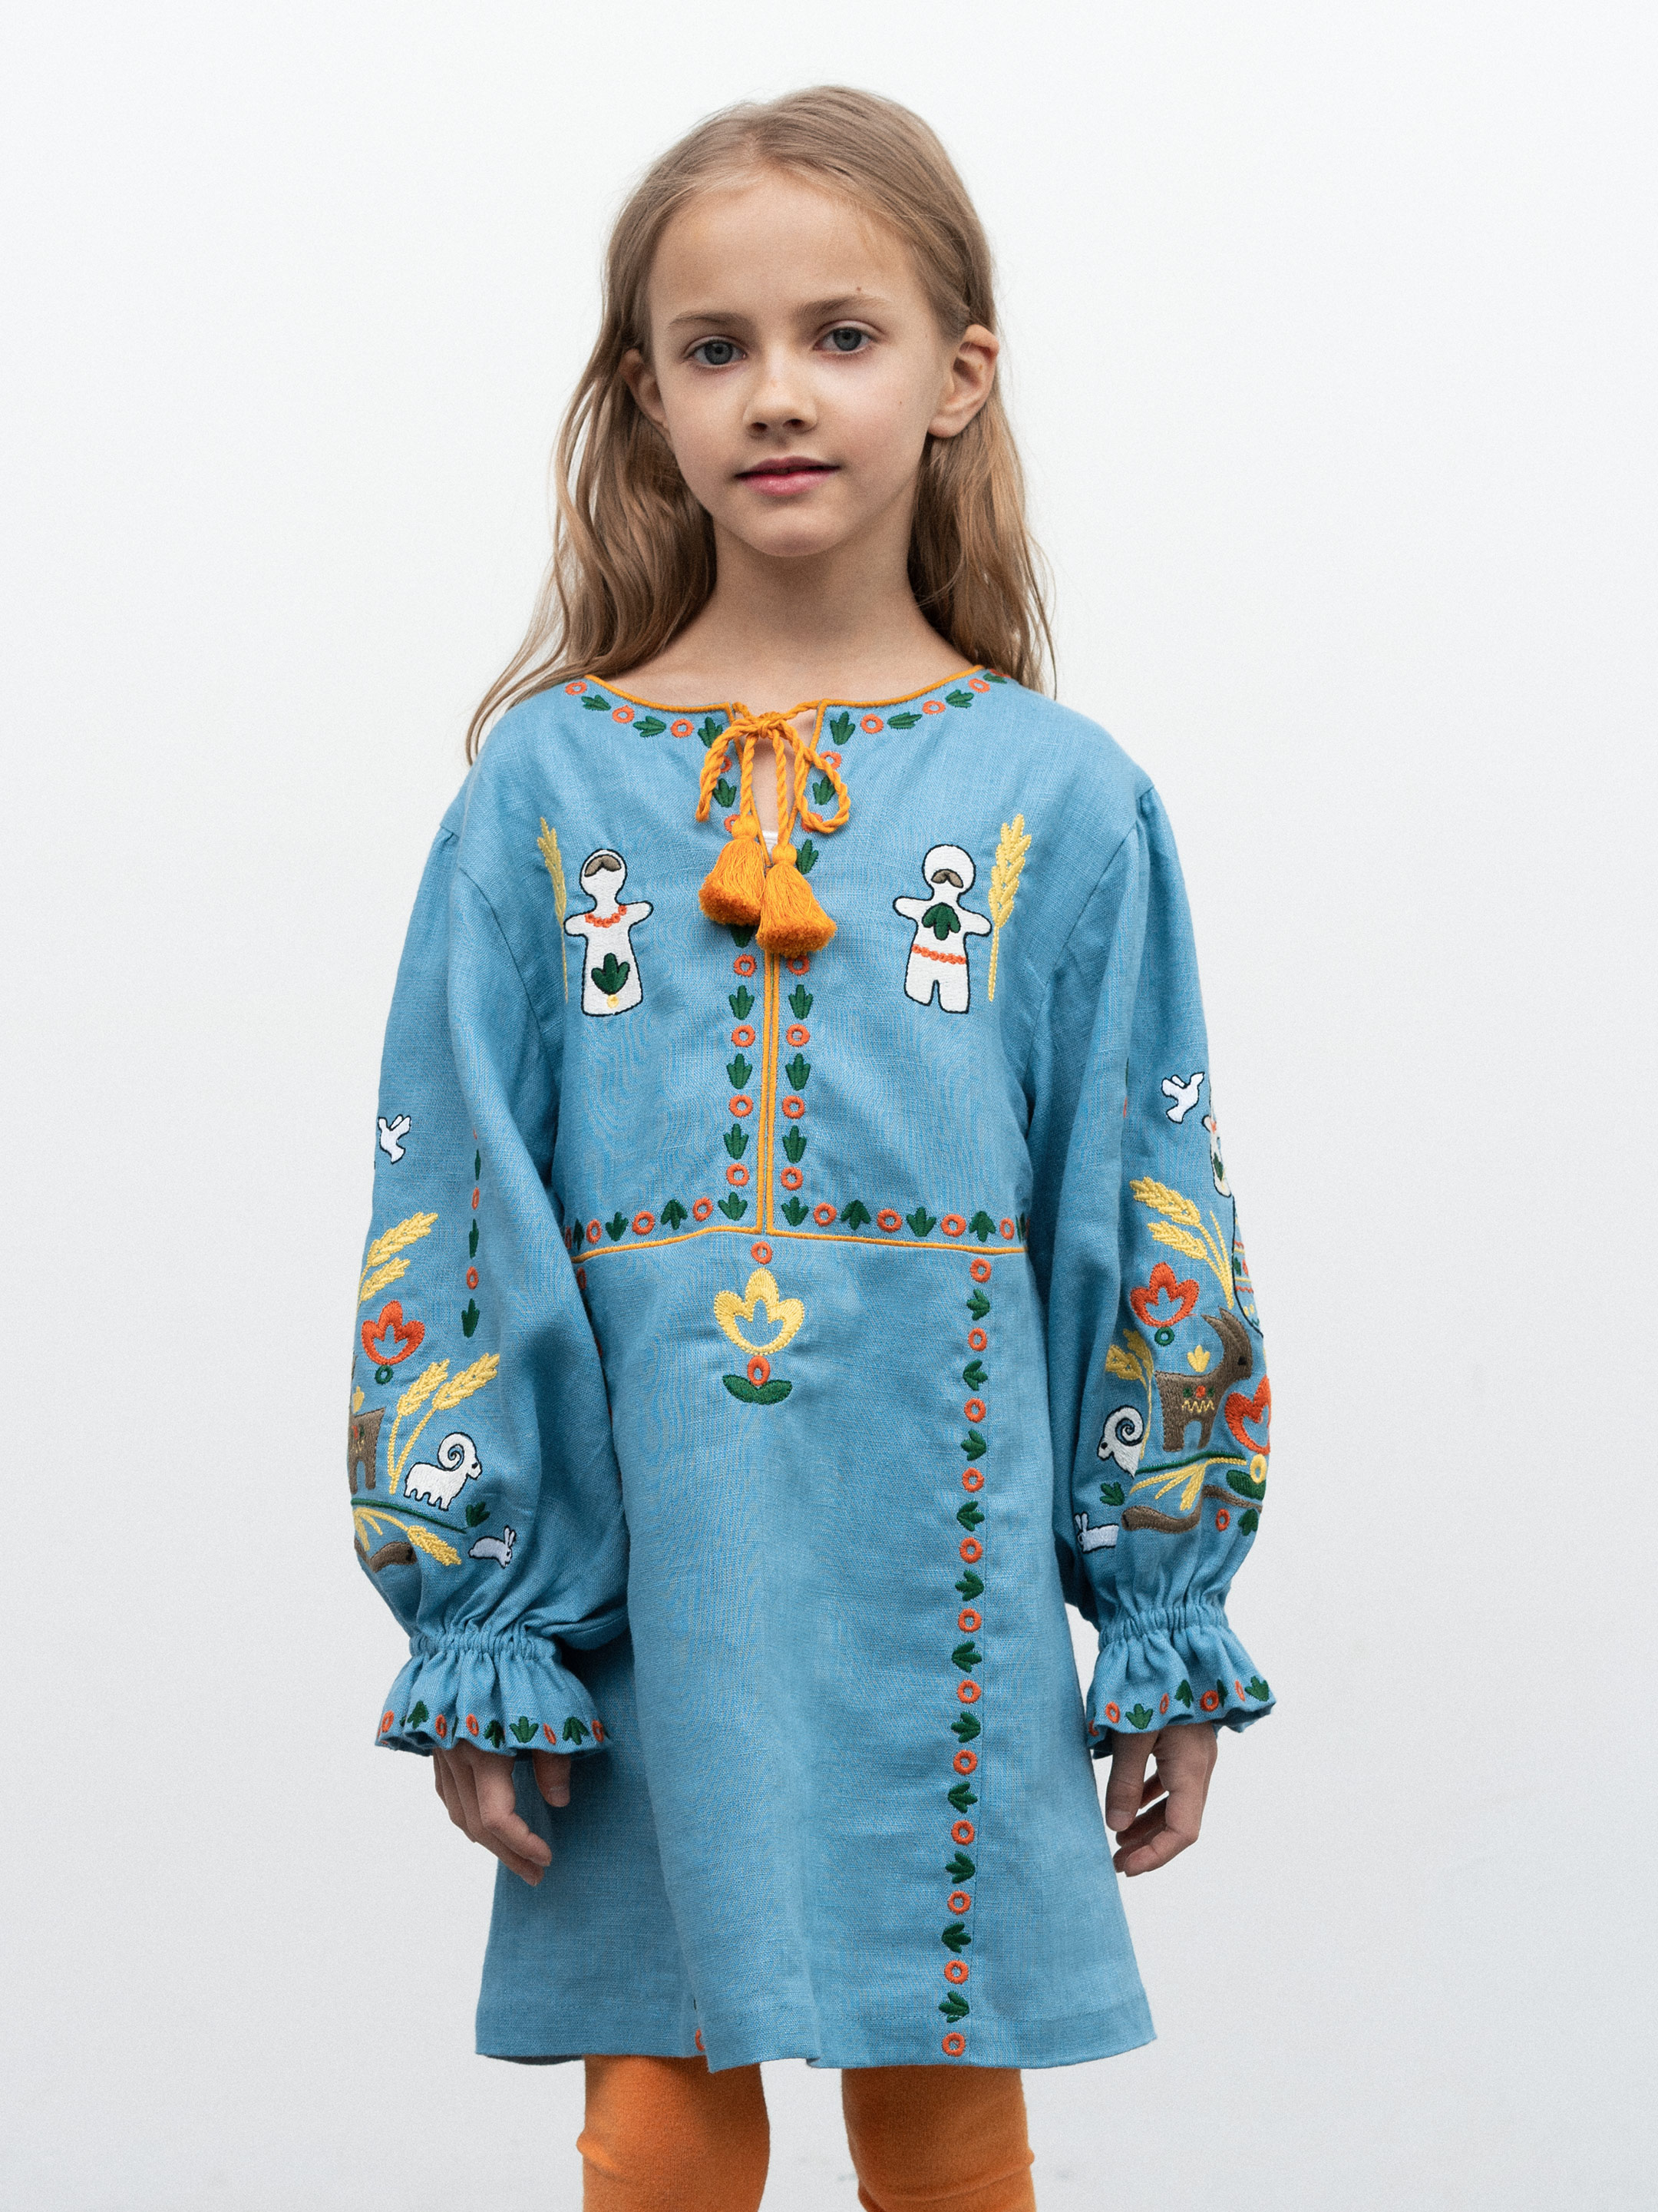 Дитяча сукня з вишивкою Yajce Raitse - фото 2